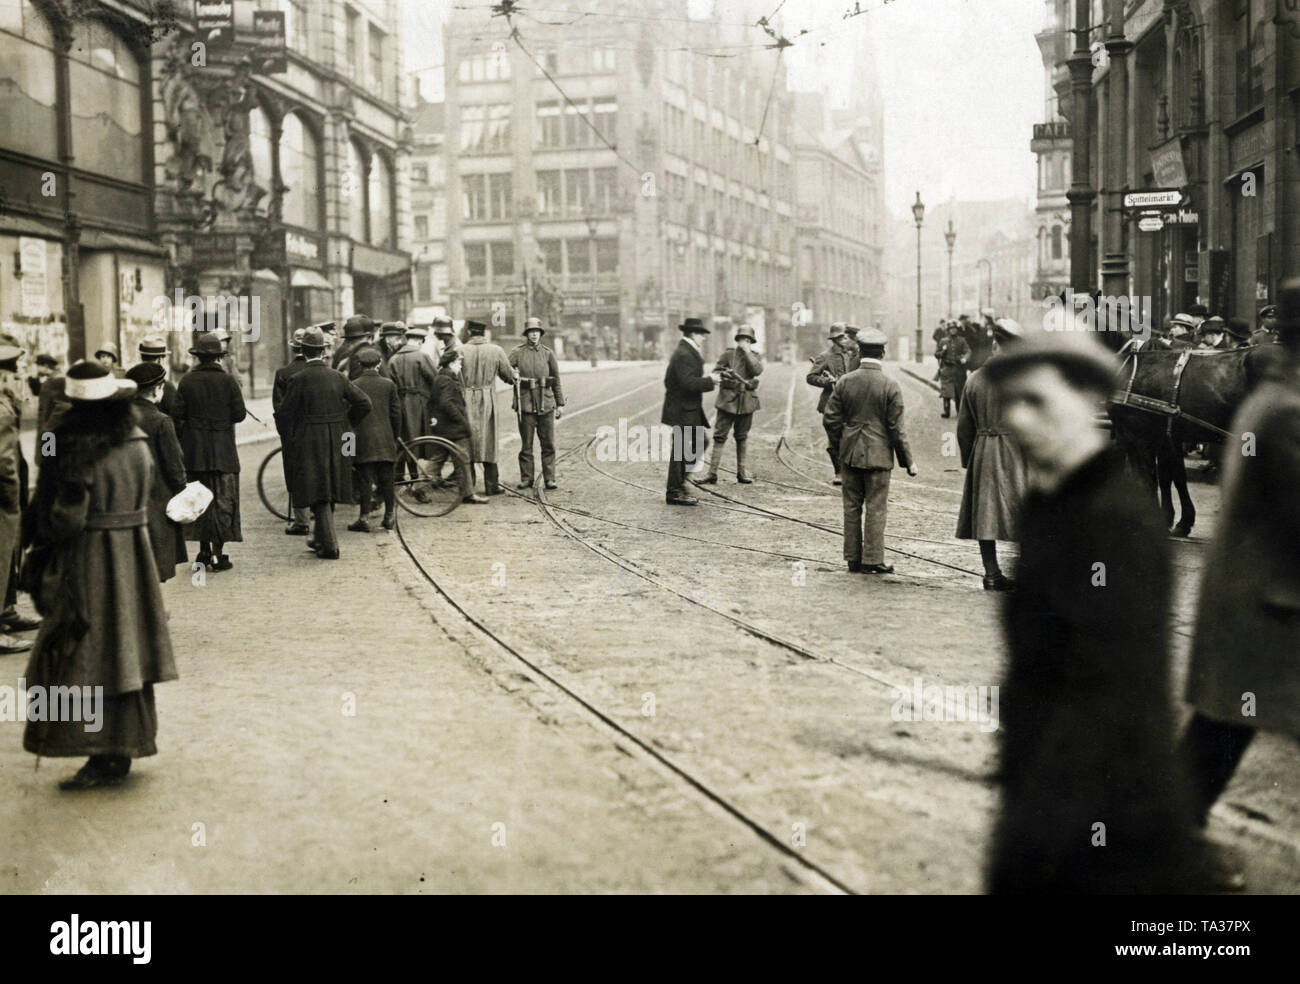 Soldati Freikorp chiudere il ponte Gertrauden al Spittelmarkt. A causa della Berlino marzo combatte in parti della città, i soldati di guardia piazze importanti e ponti. Foto Stock